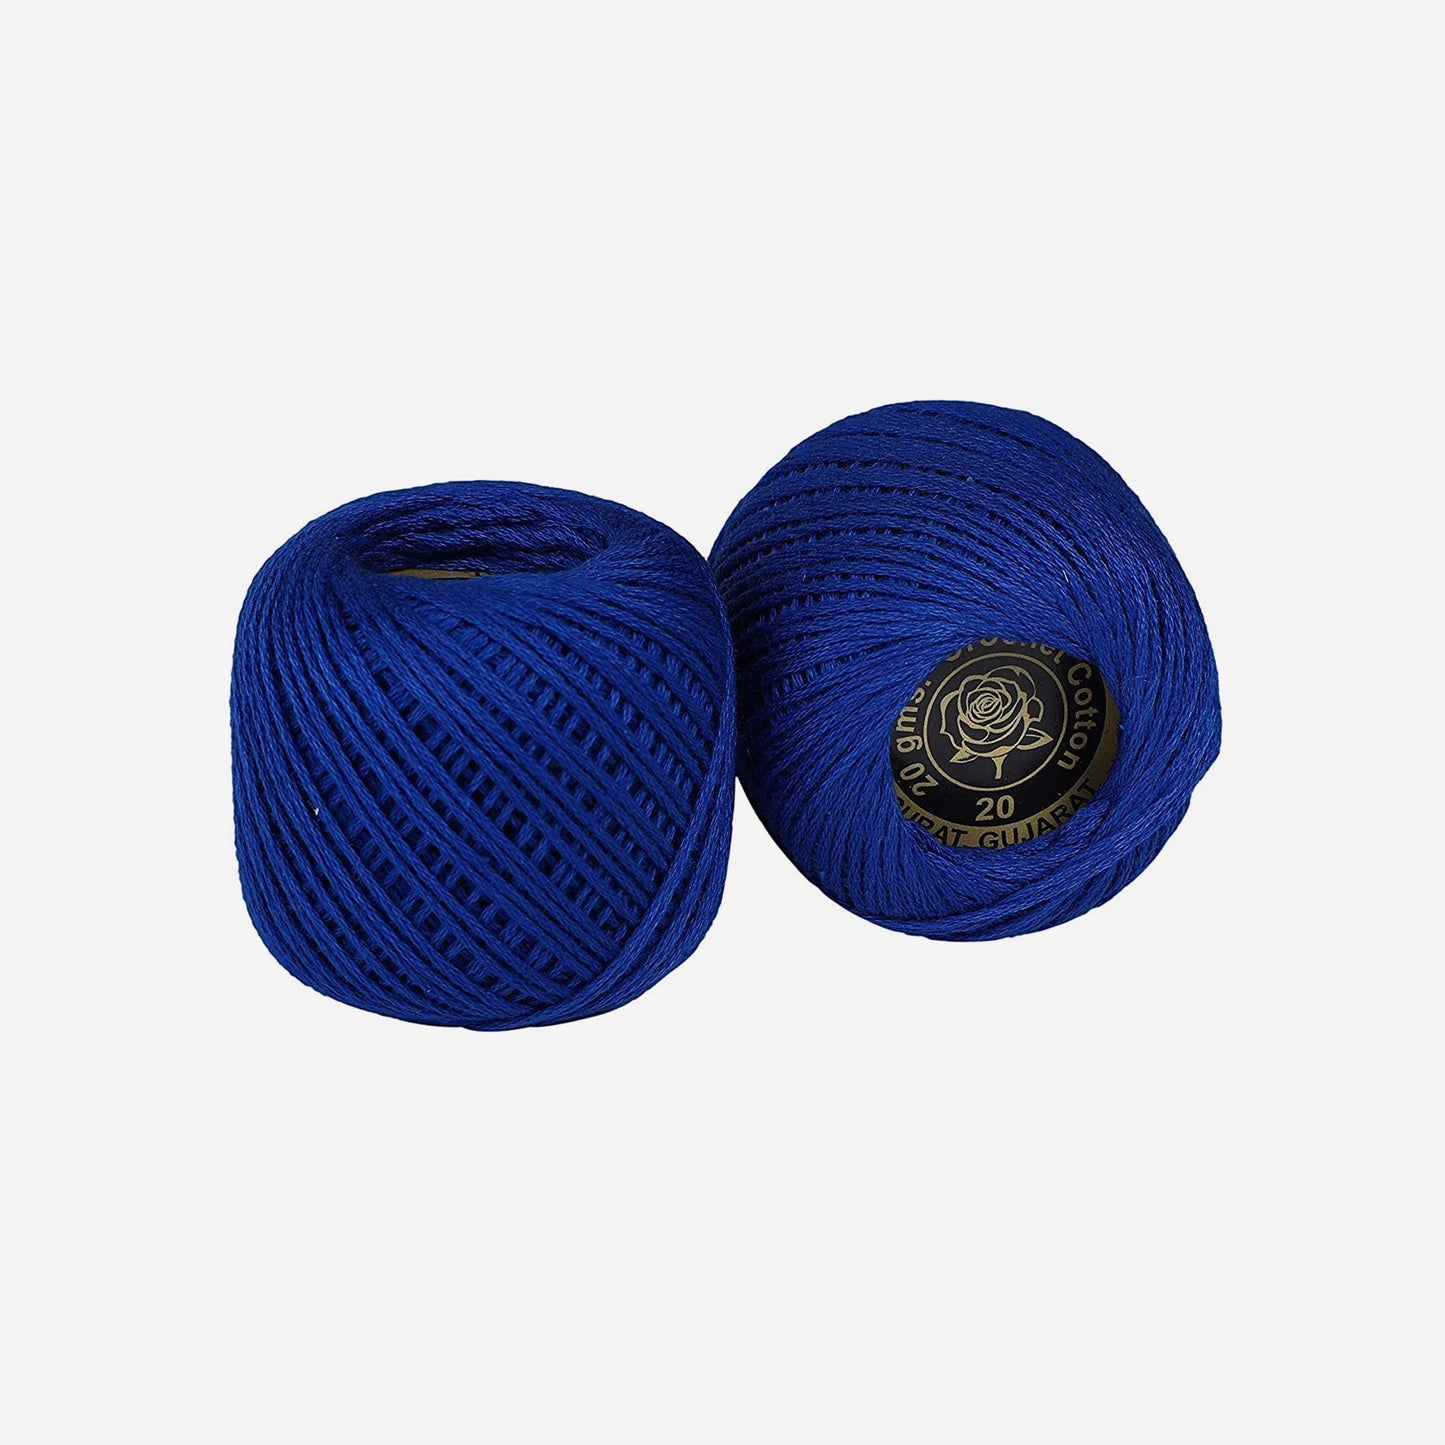 Hand-crochet hoops (Variation 17)